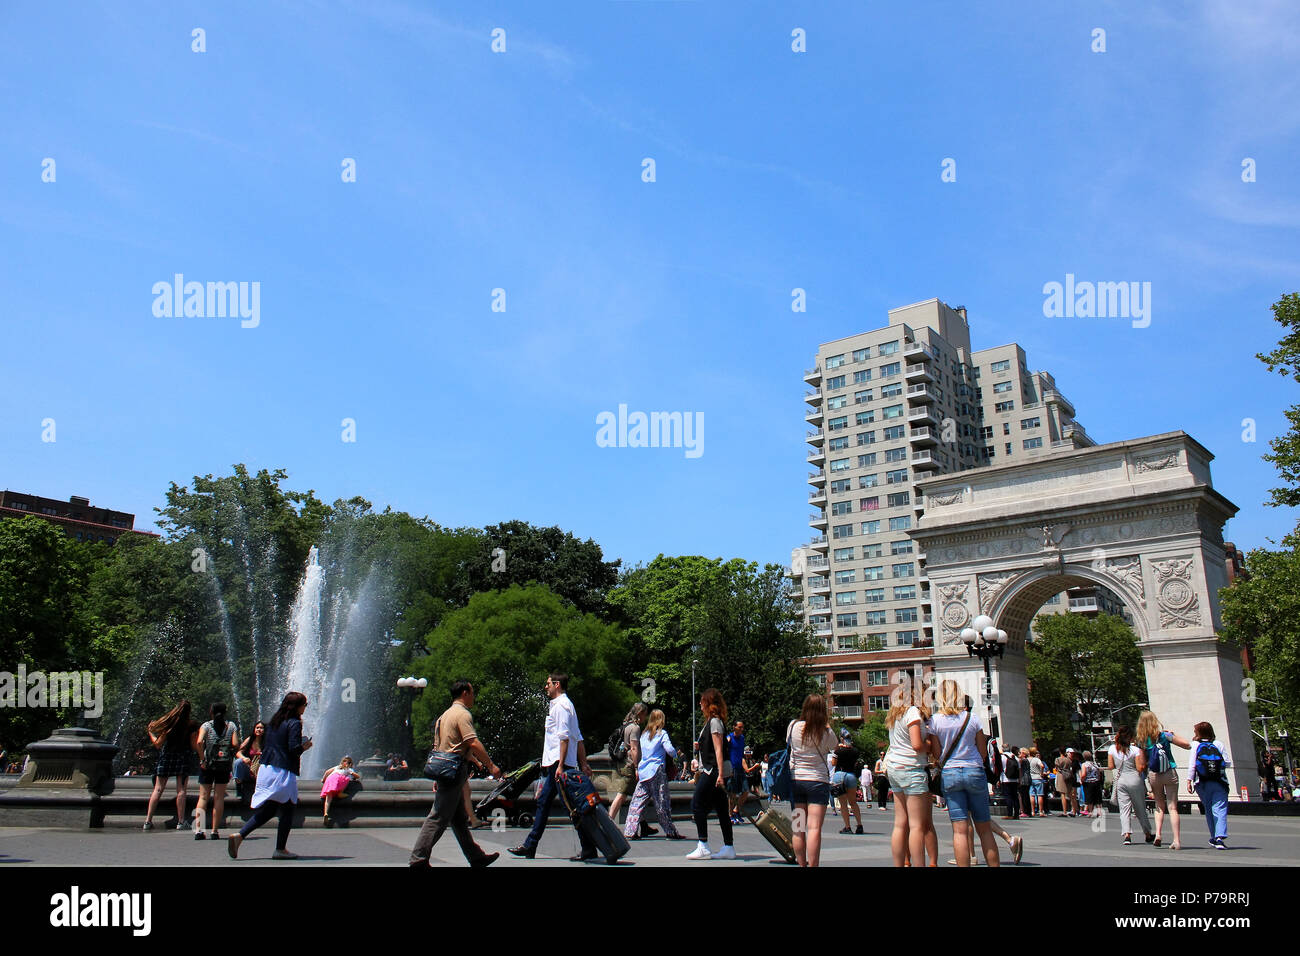 NEW YORK, NY - 15 juin : Les gens se sont réunis près de Washington Square Park fontaine sur chaude journée d'été, West Village, Manhattan le 15 juin 2017 à New York Banque D'Images